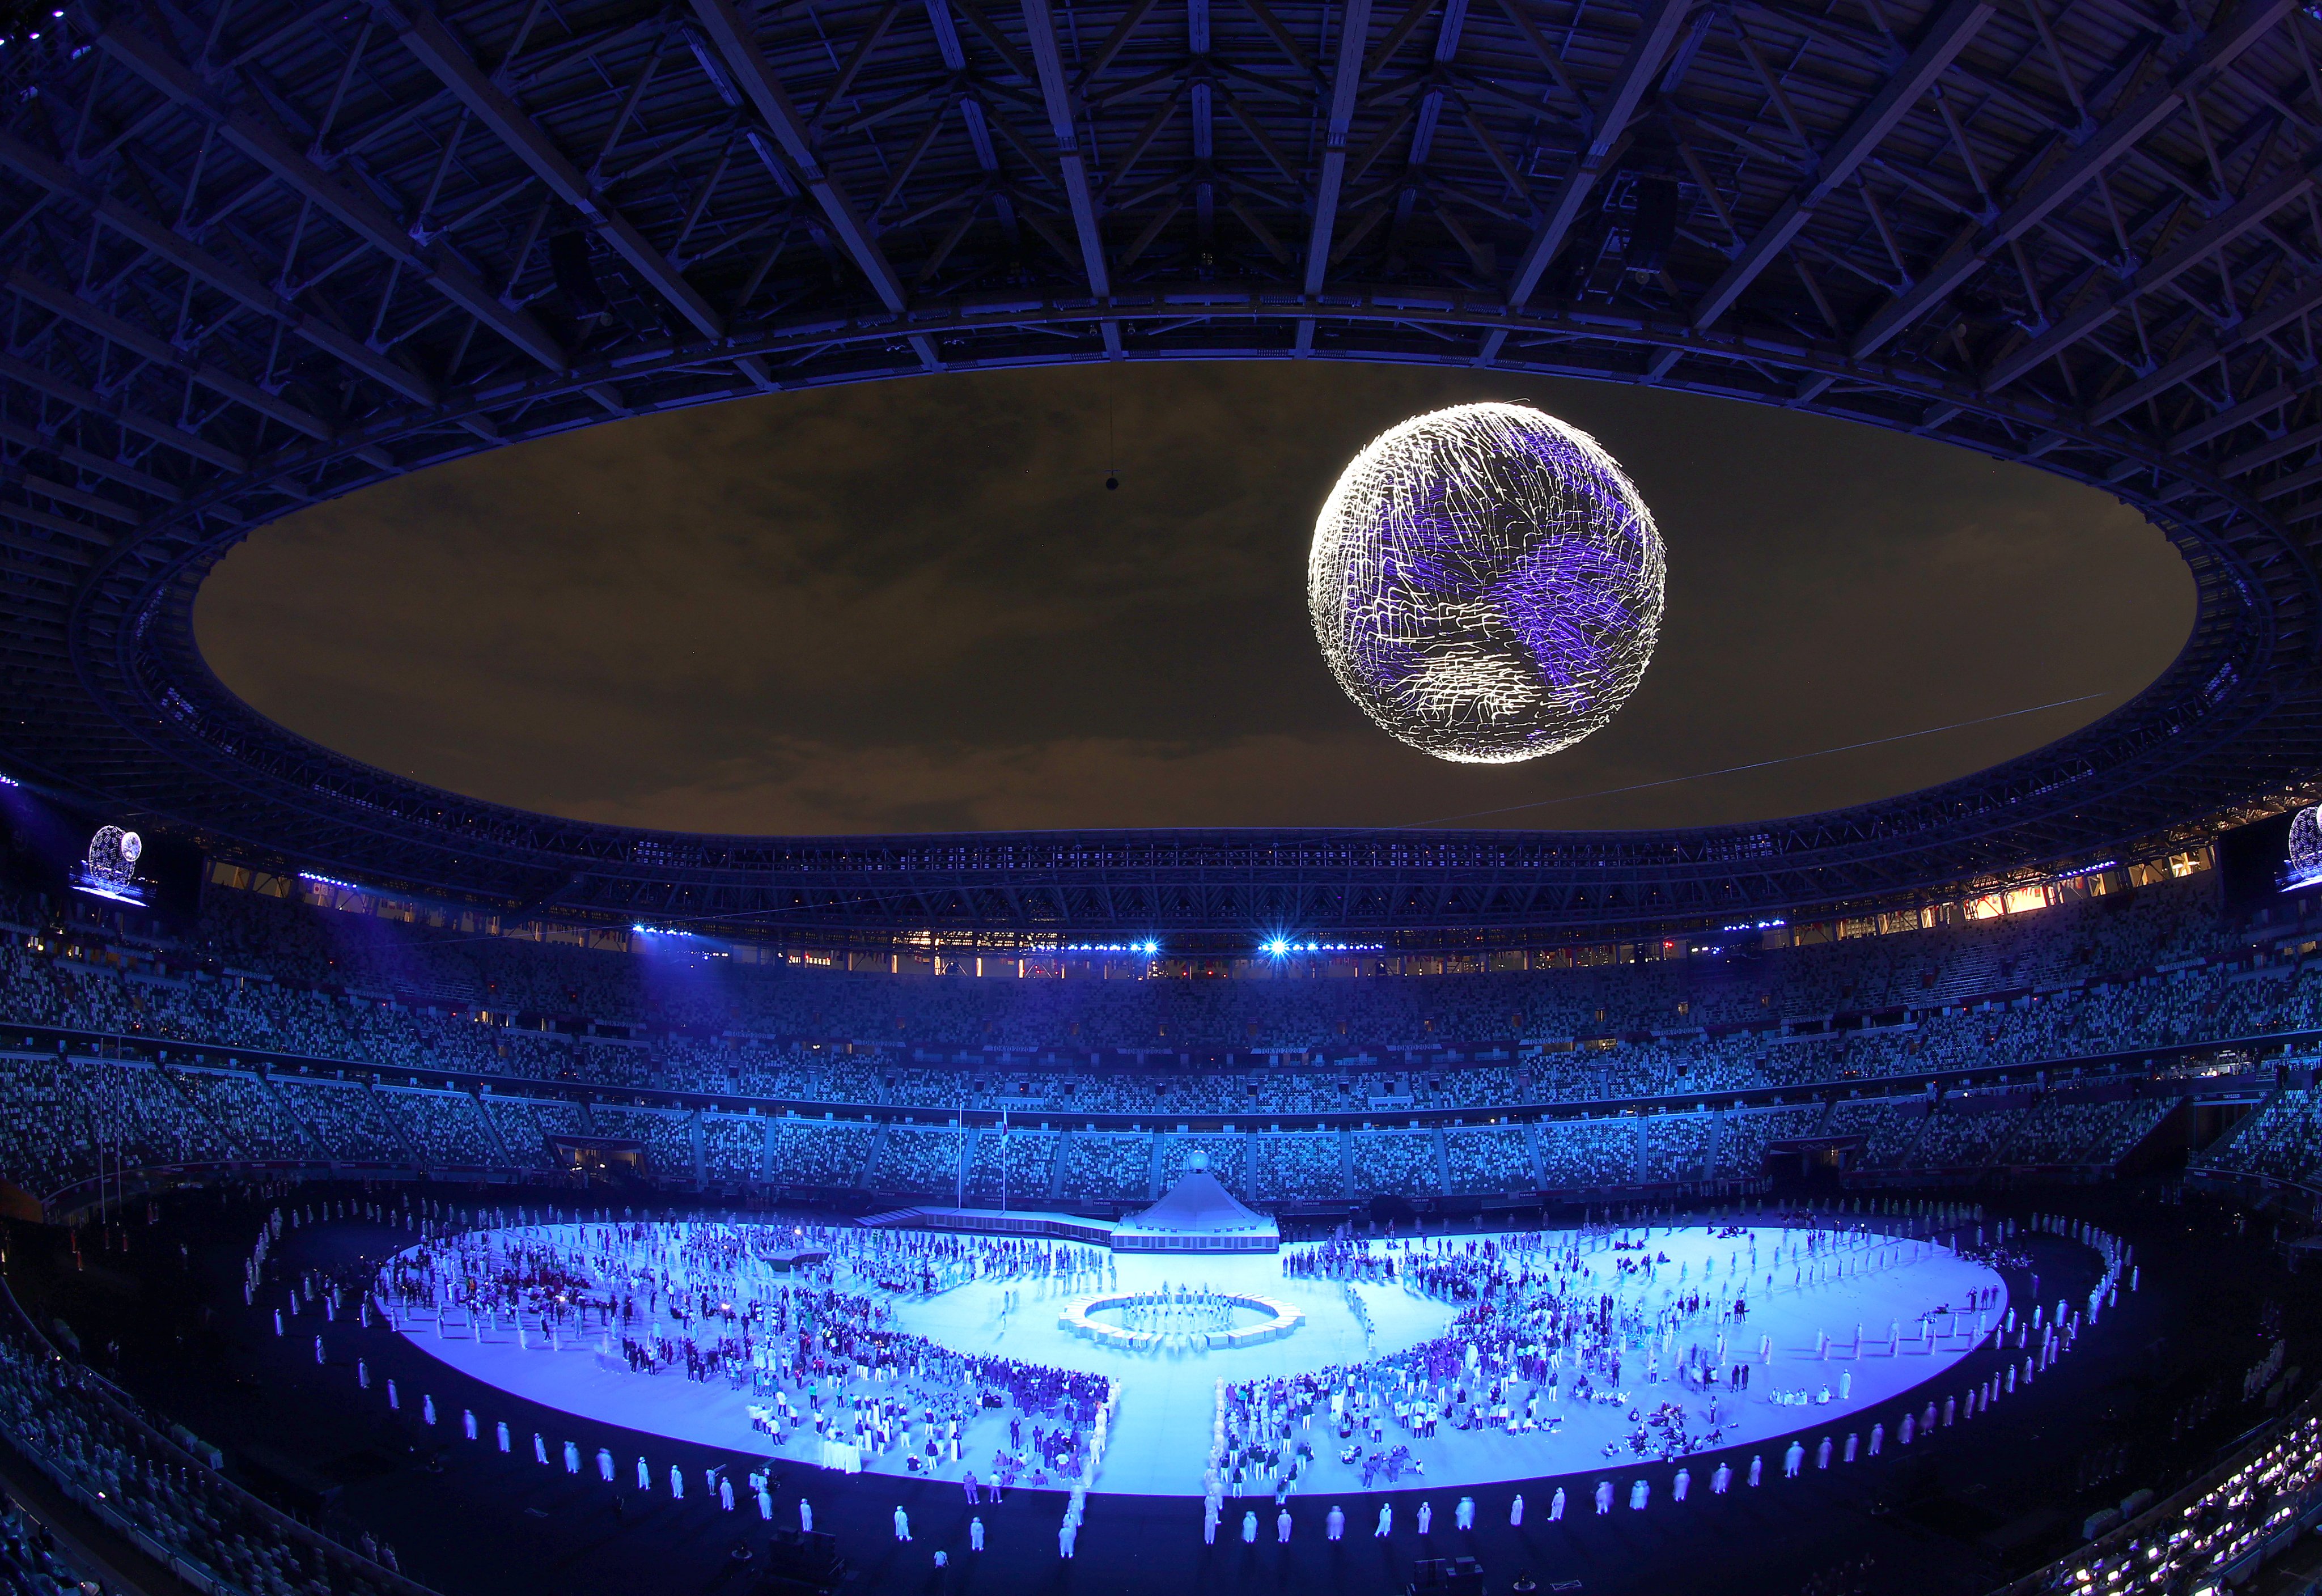 Fotografia da abertura dos Jogos Olímpicos em Tóquio mostra projeção gráfica do planeta Terra em pleno ar, no meio de um estádio.